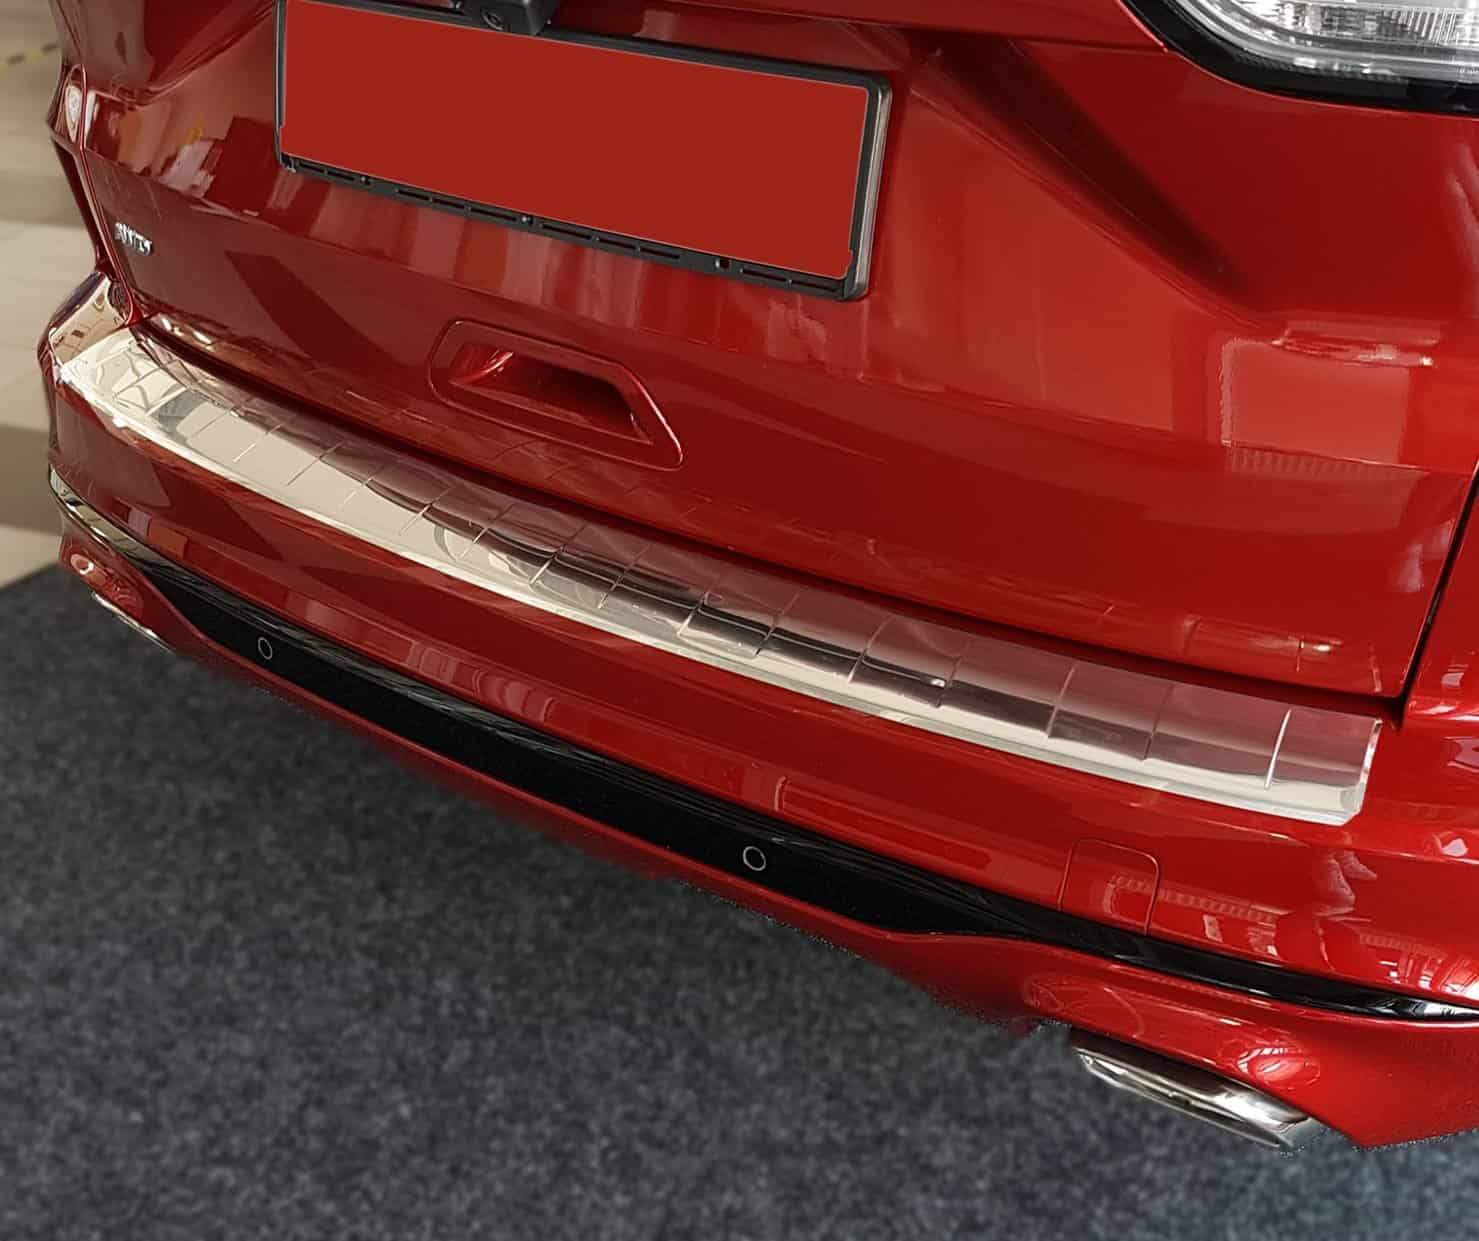 Tesla Model 3: Ladekantenschutz für die hintere Stoßstange